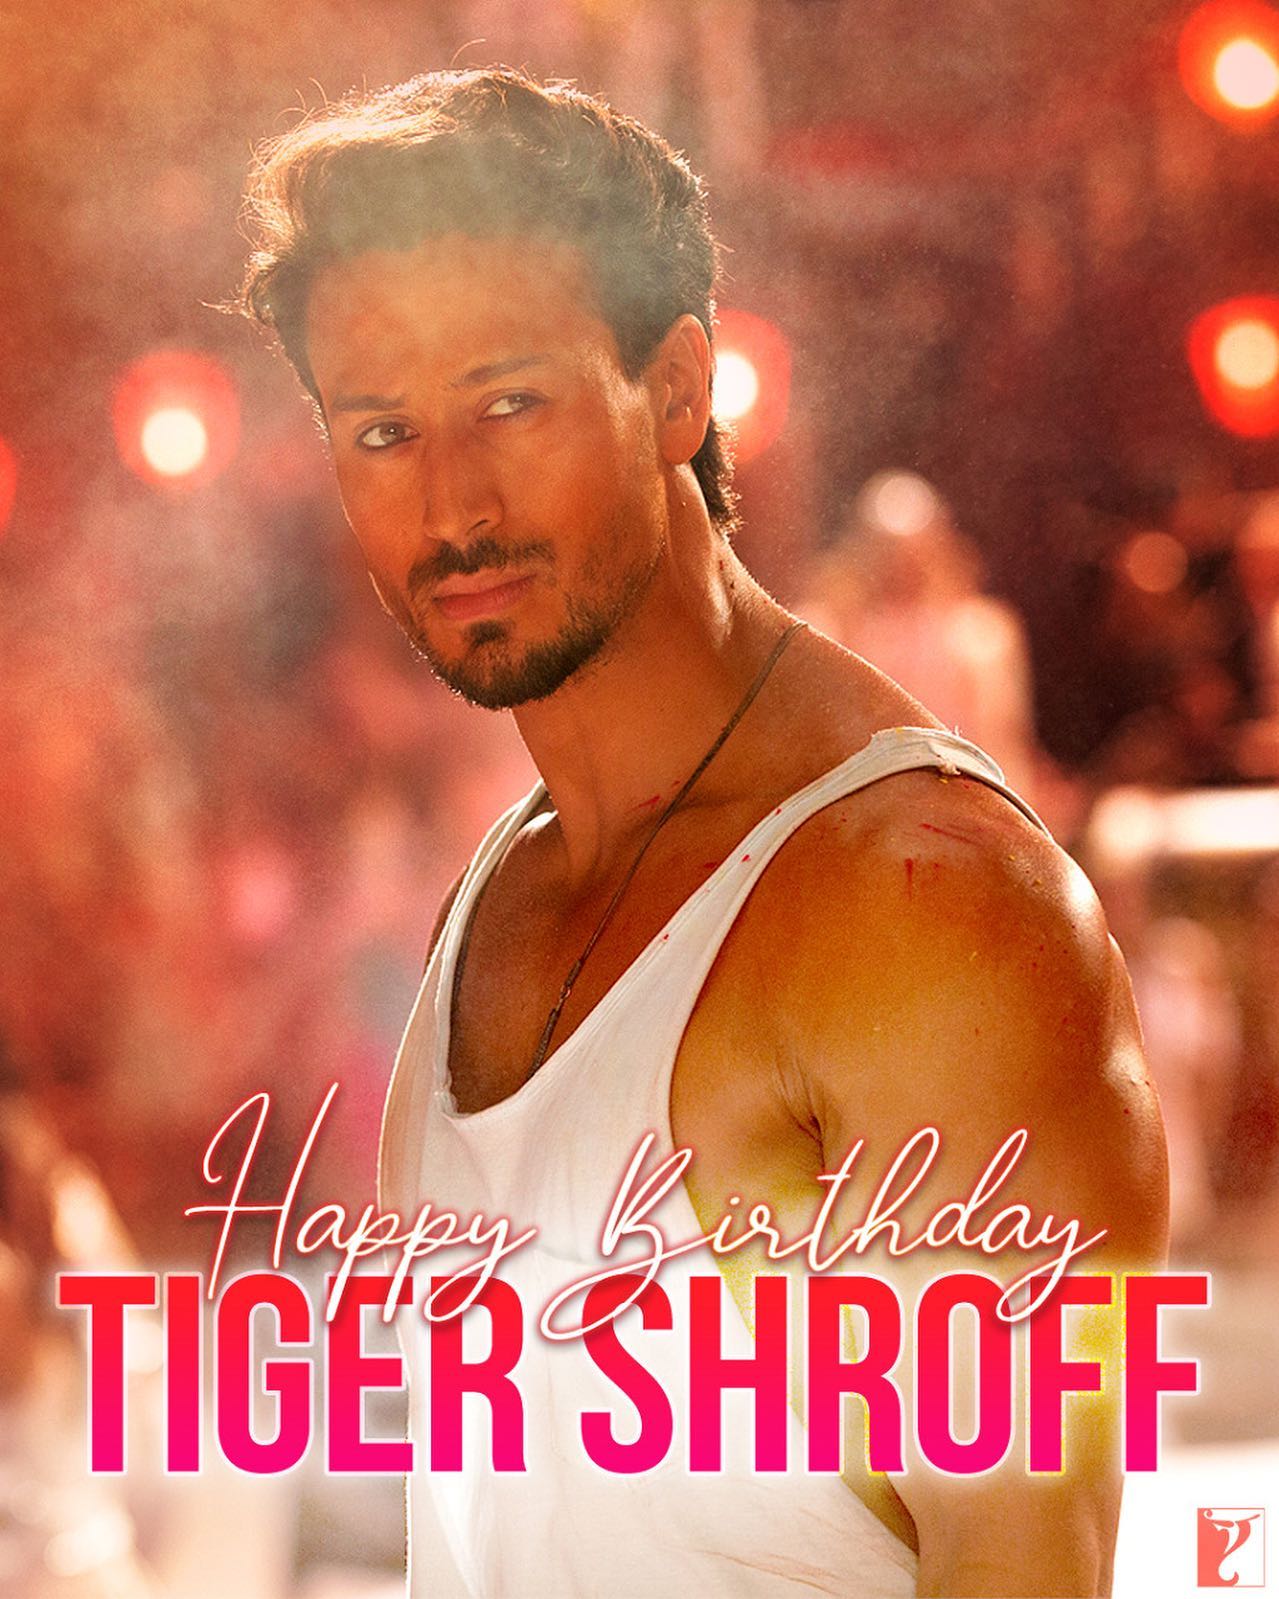 Happy birthday to tiger shroff 